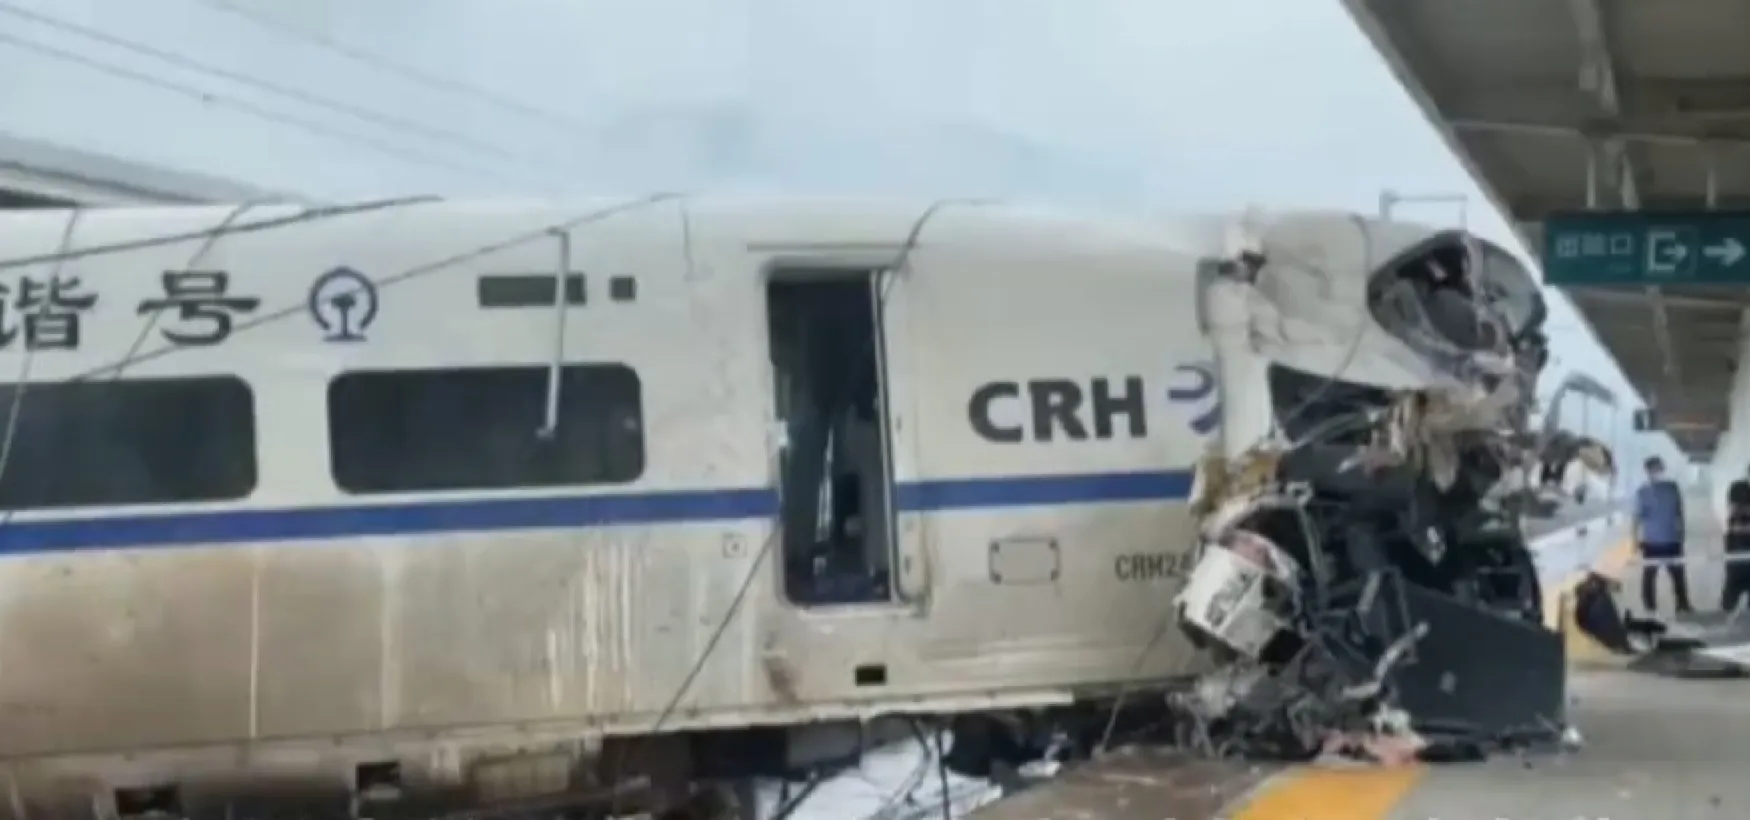 Guizhou train crash